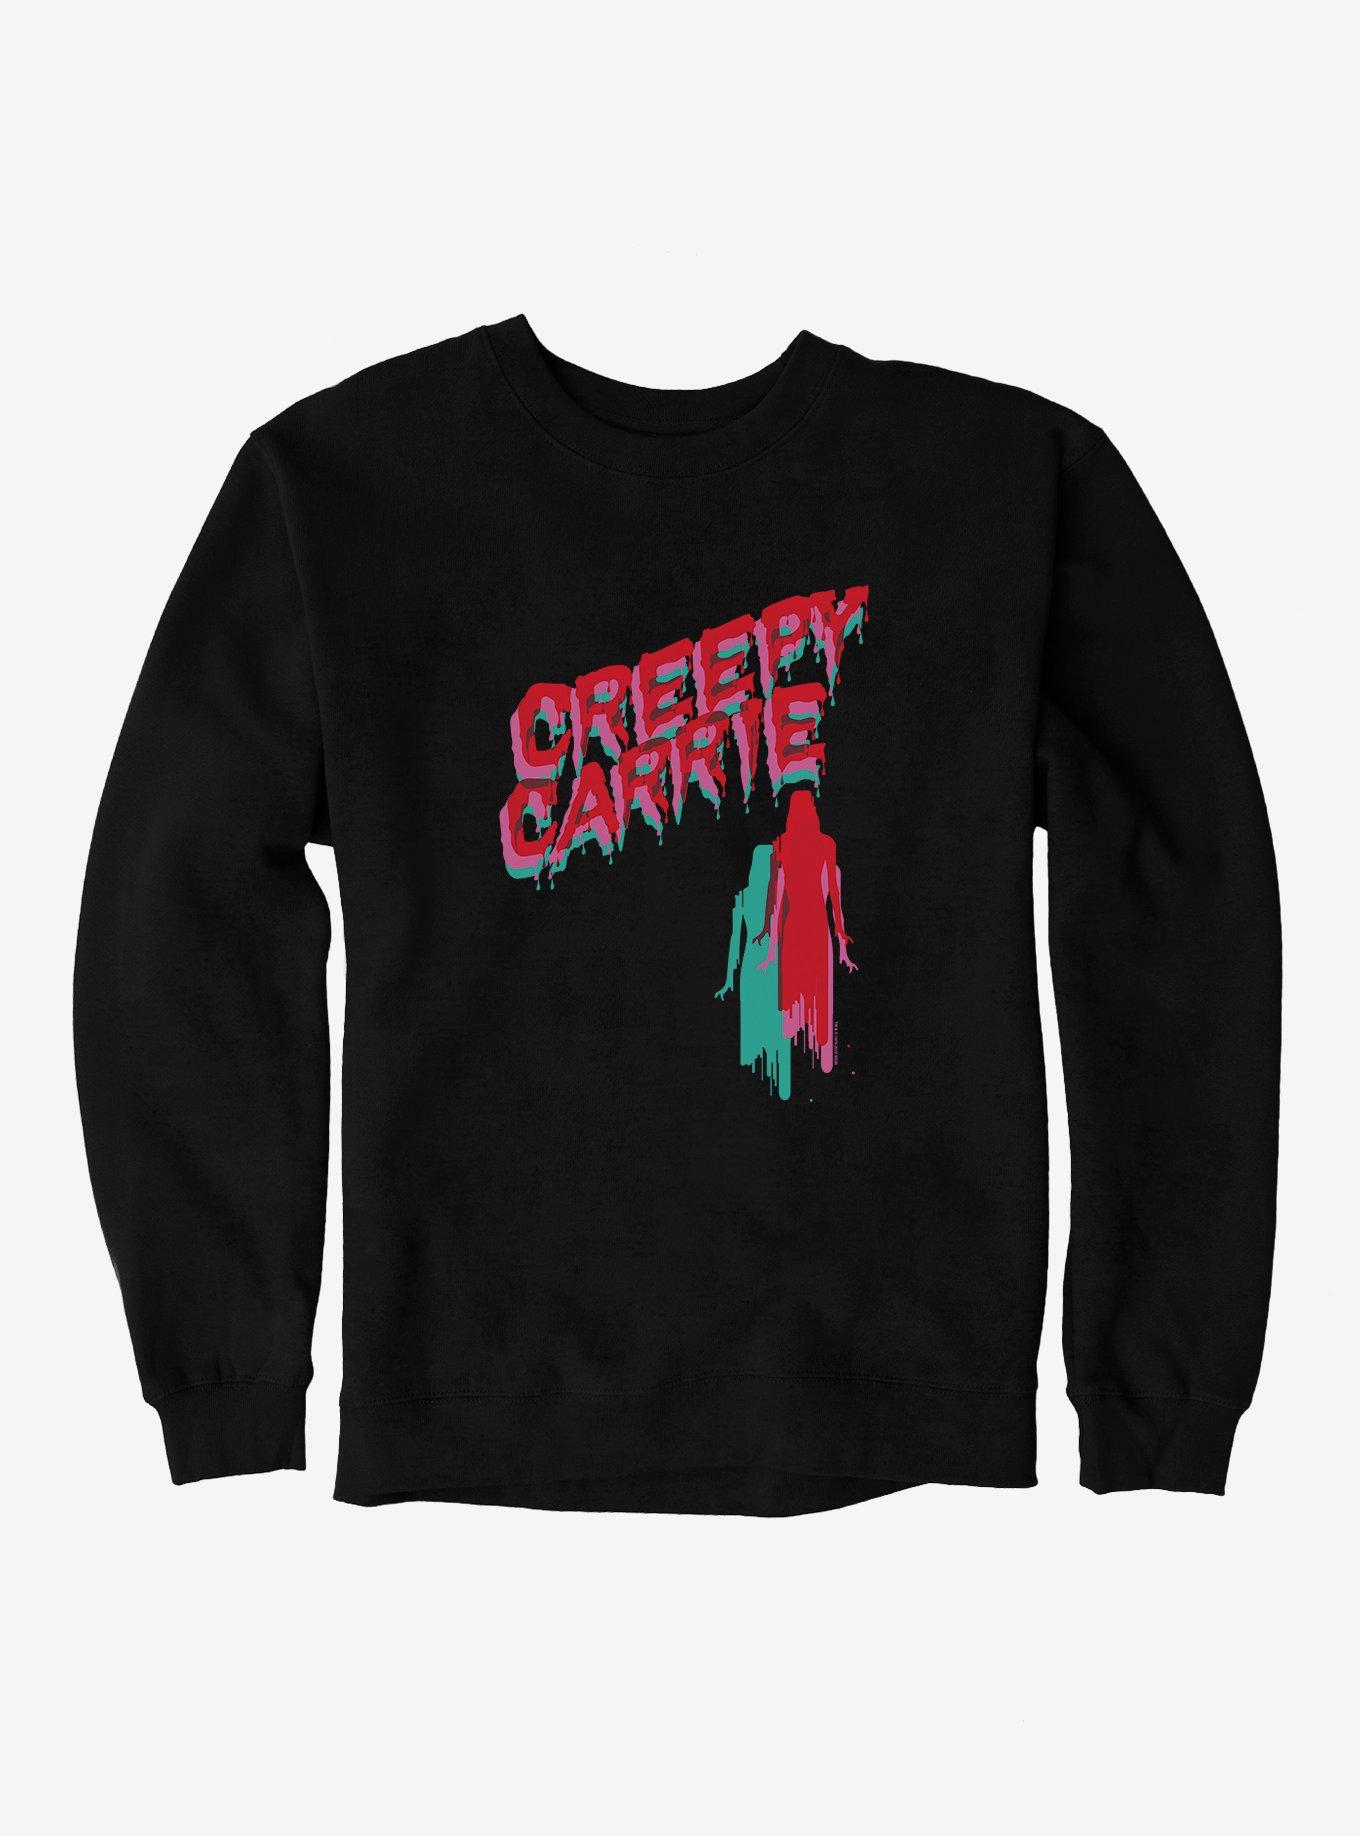 Carrie 1976 Creepy Carrie Sweatshirt, BLACK, hi-res